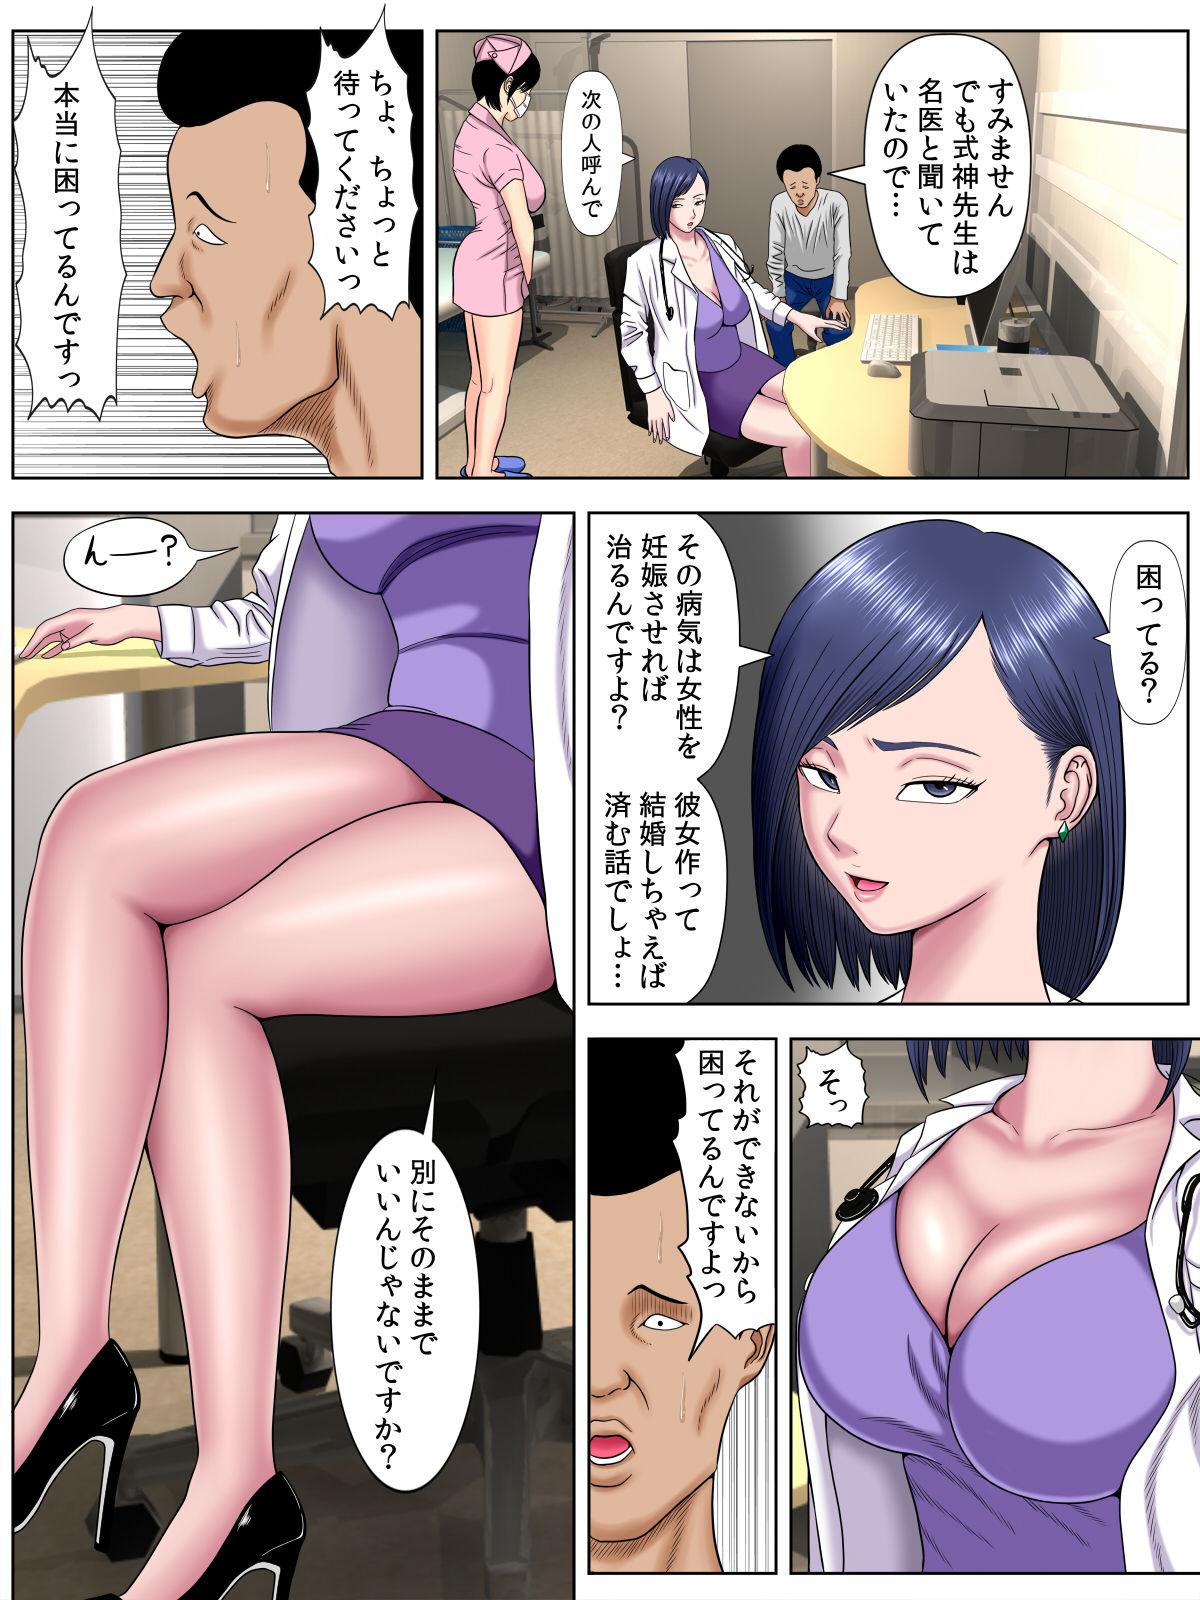 Sex Shinai to Shinu Yamai 3 33